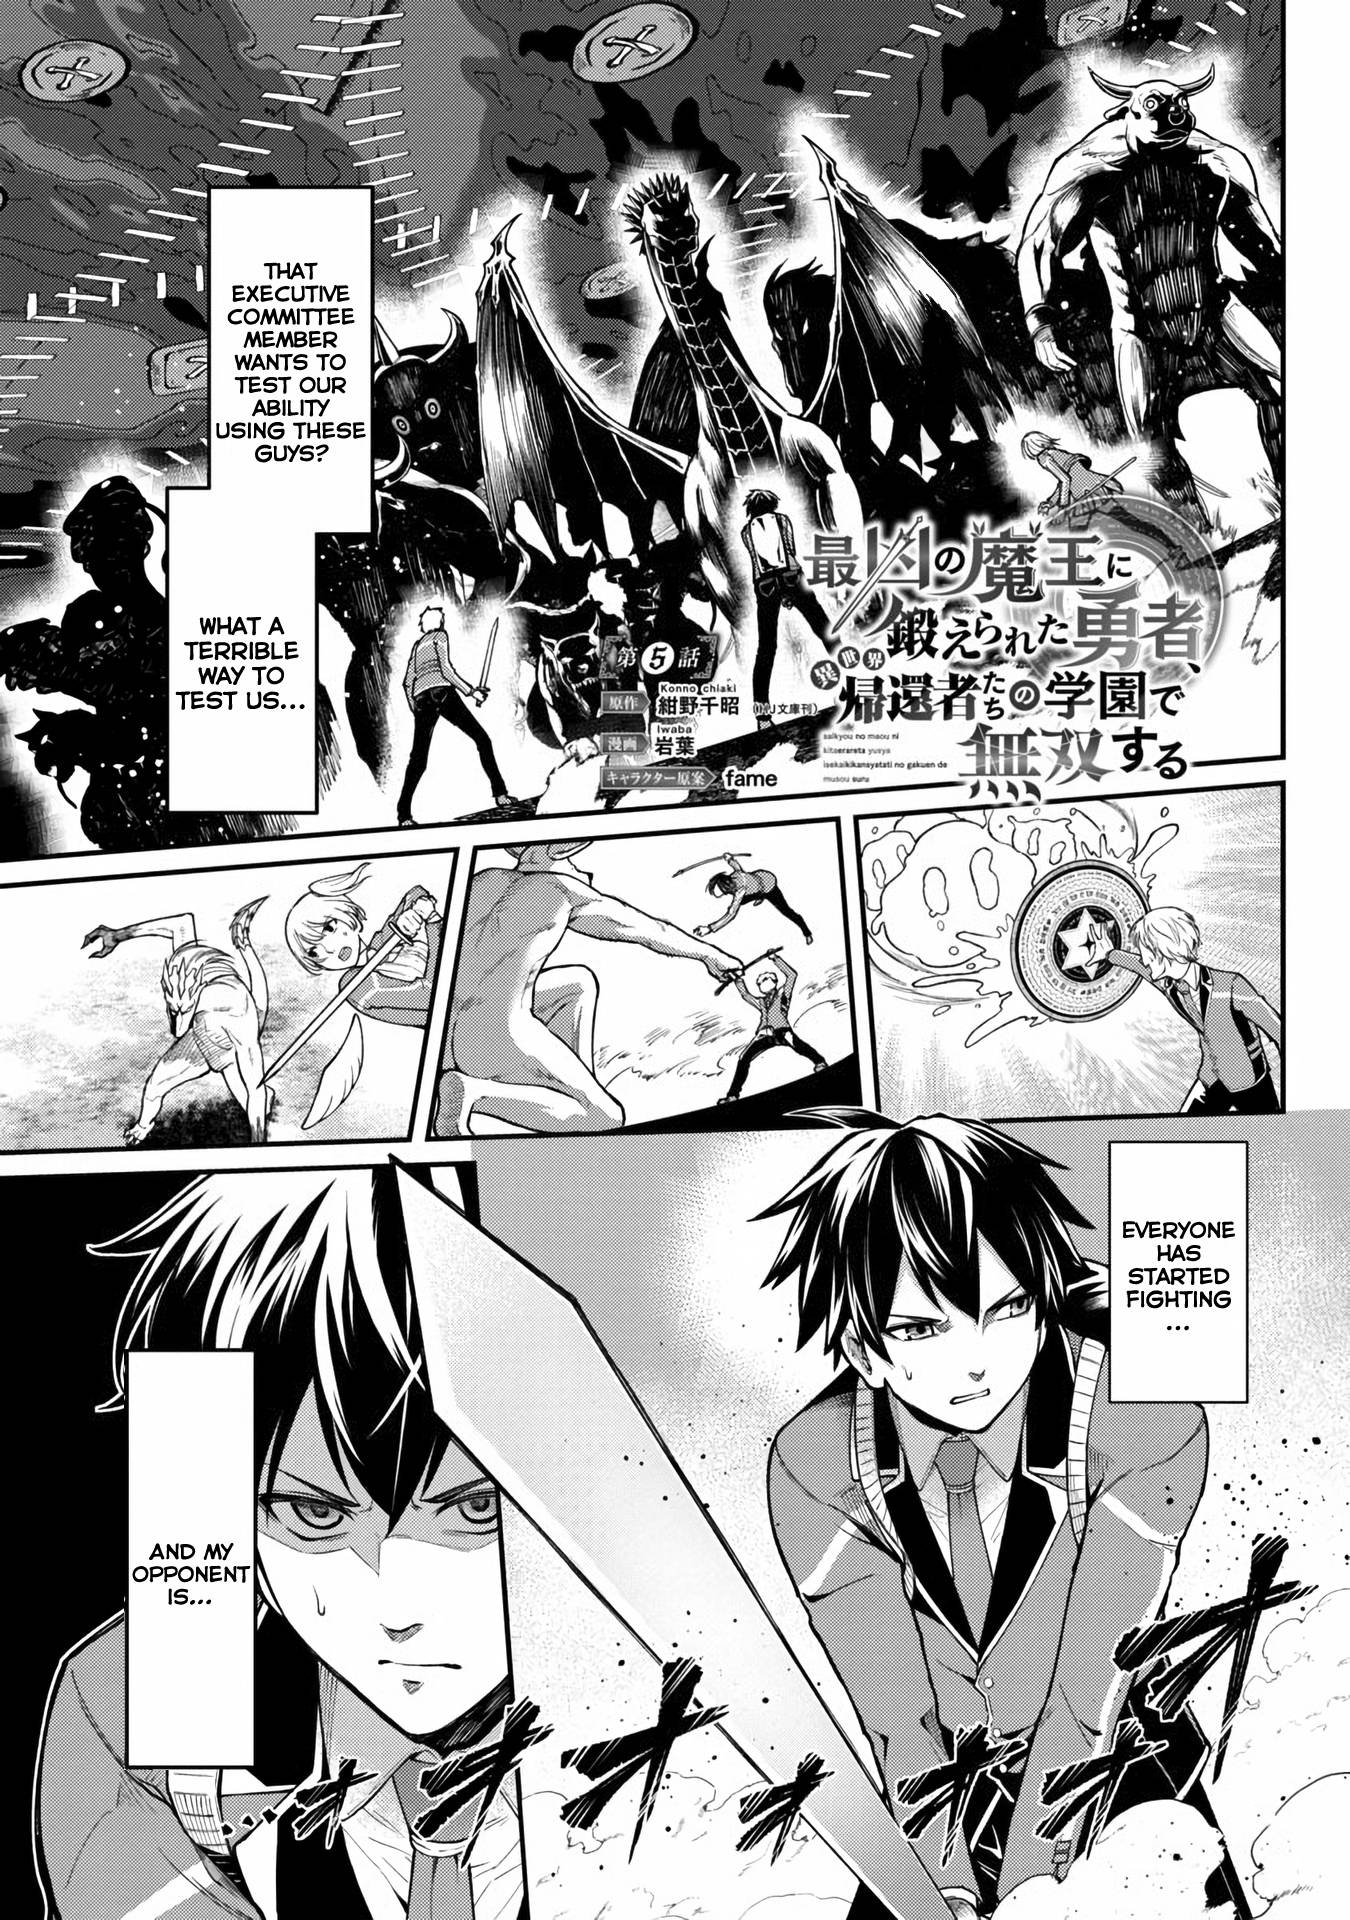 Read Saikyou No Maou Ni Kitaerareta Yuusha Isekai Kikanshatati No Gakuen De  Musou Suru Manga English [New Chapters] Online Free - MangaClash